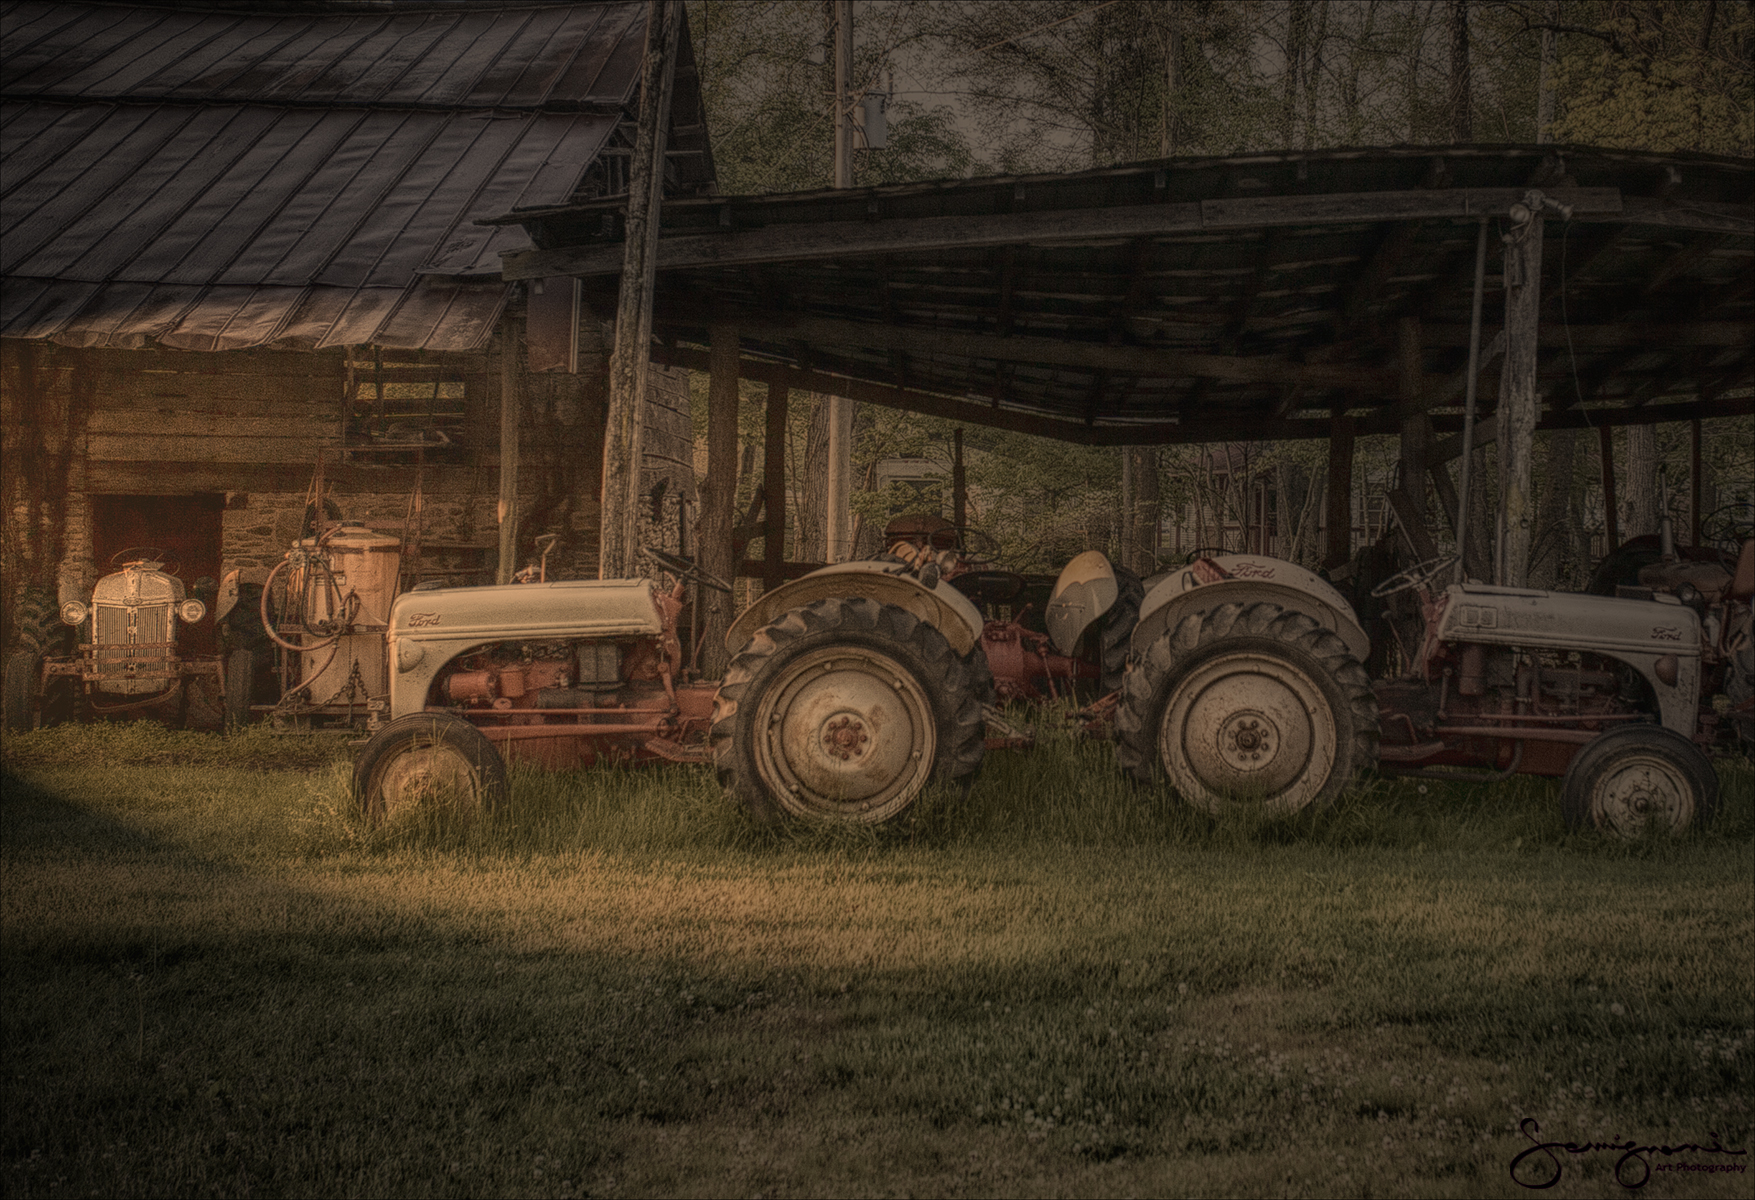 Three Tractors- Fines Creek, NC